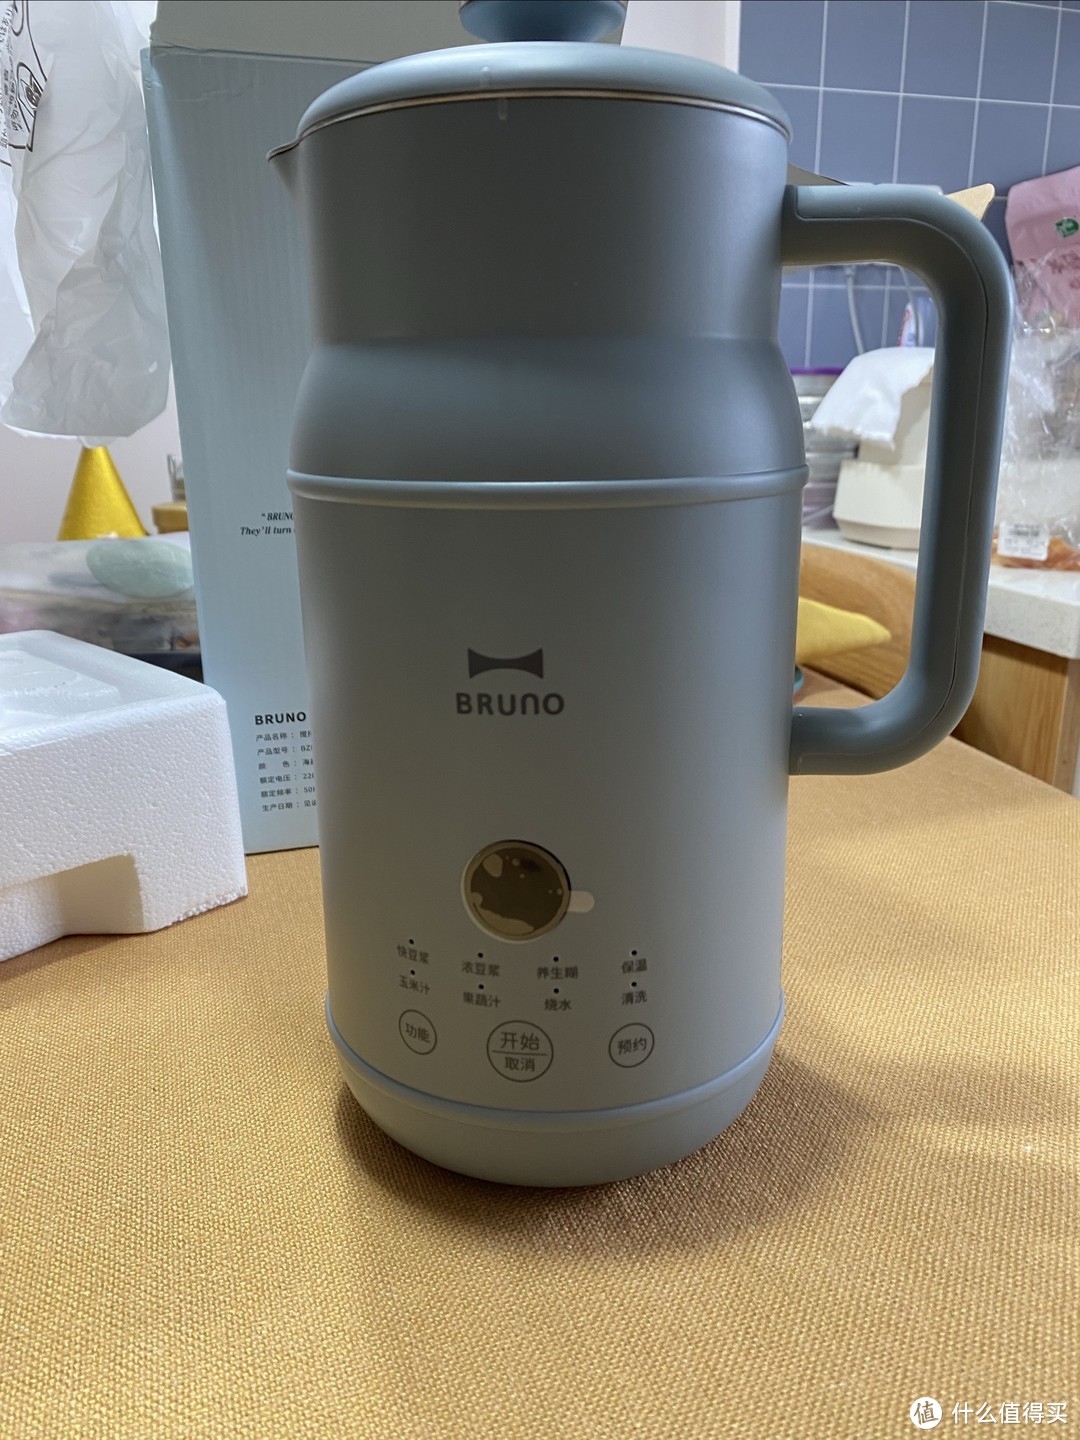 BRUNO小奶壶豆浆机：一款实用的多功能家用破壁机